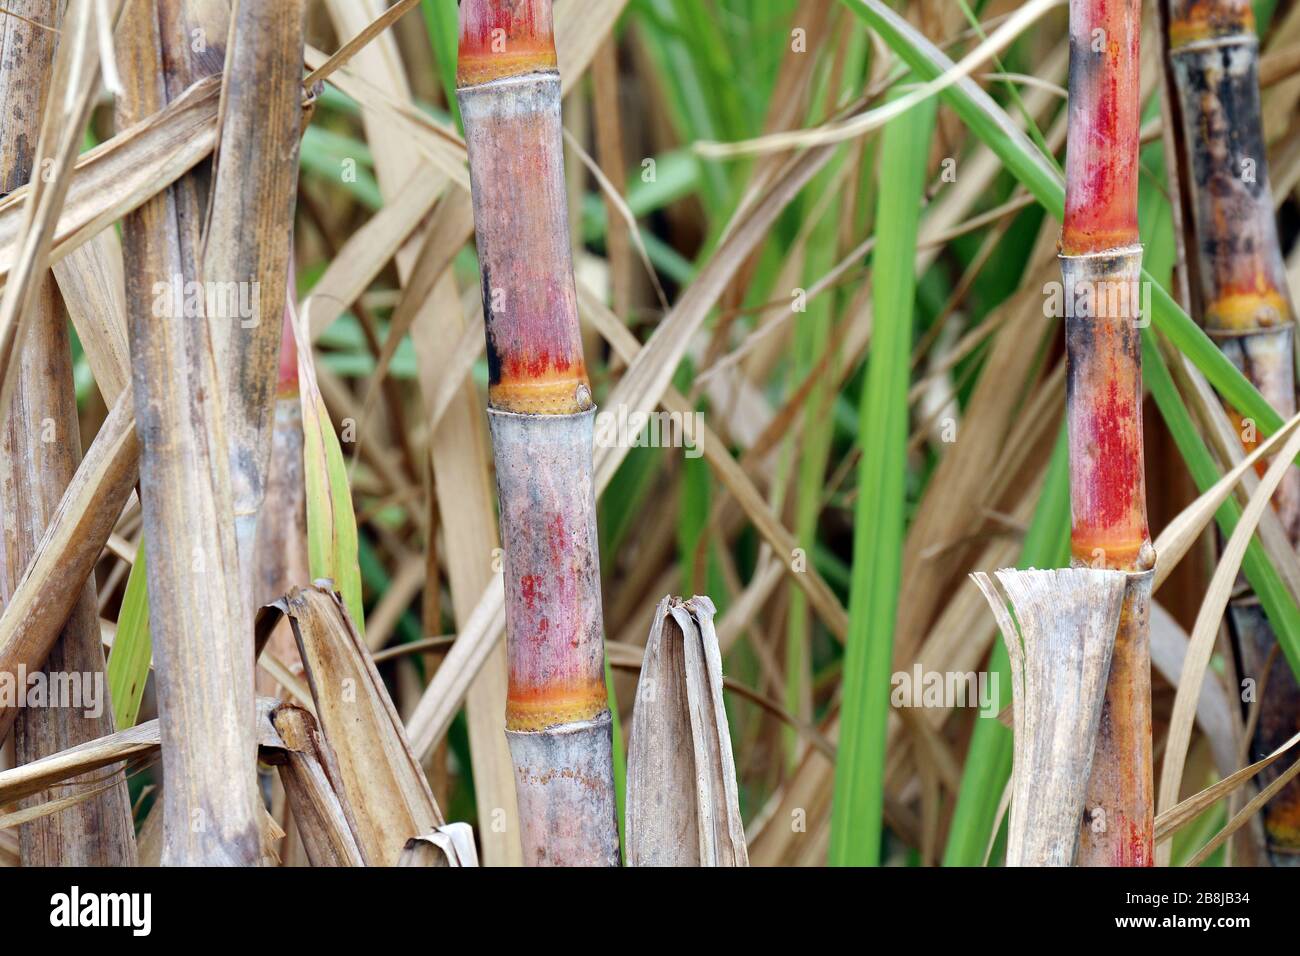 sugarcane fresh, plantation sugarcane, sugarcane farm, background sugar cane, sugarcane agriculture Stock Photo